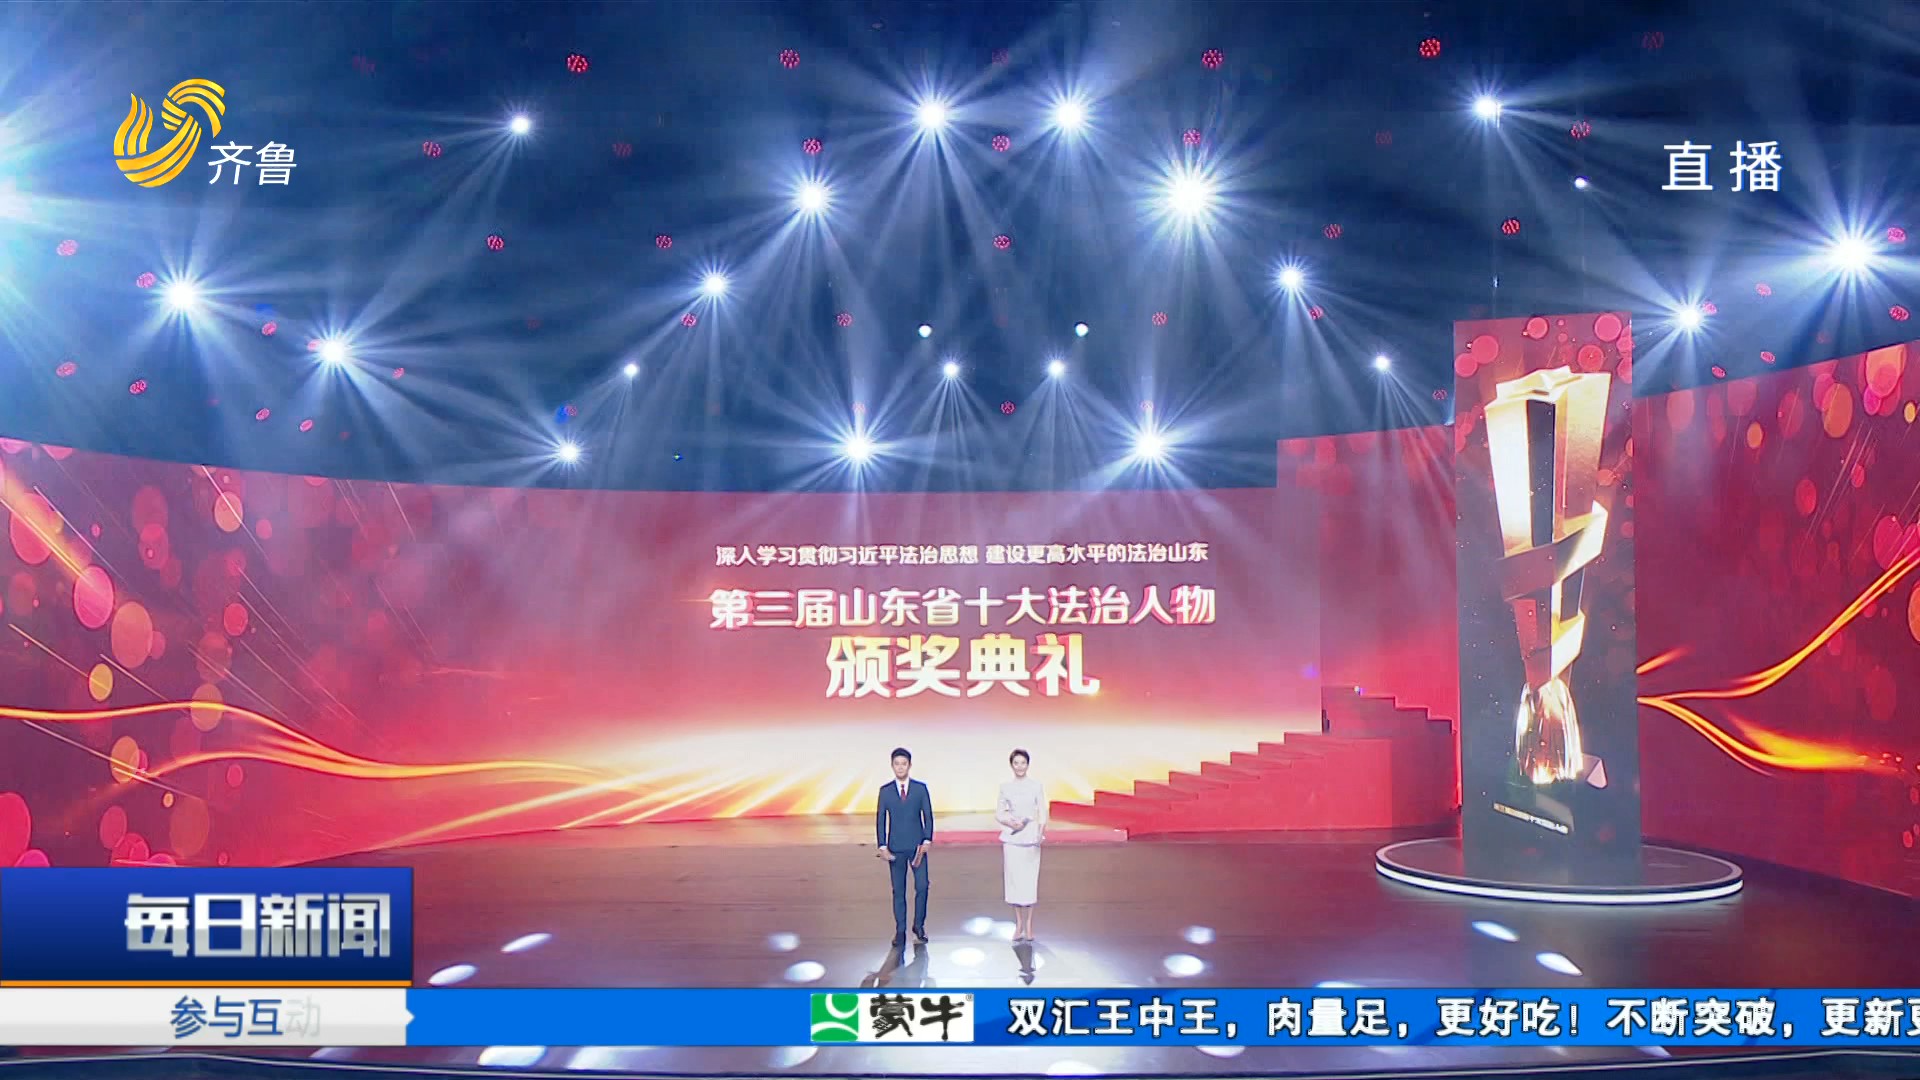 第三届“山东省十大法治人物”颁奖典礼在济南举办